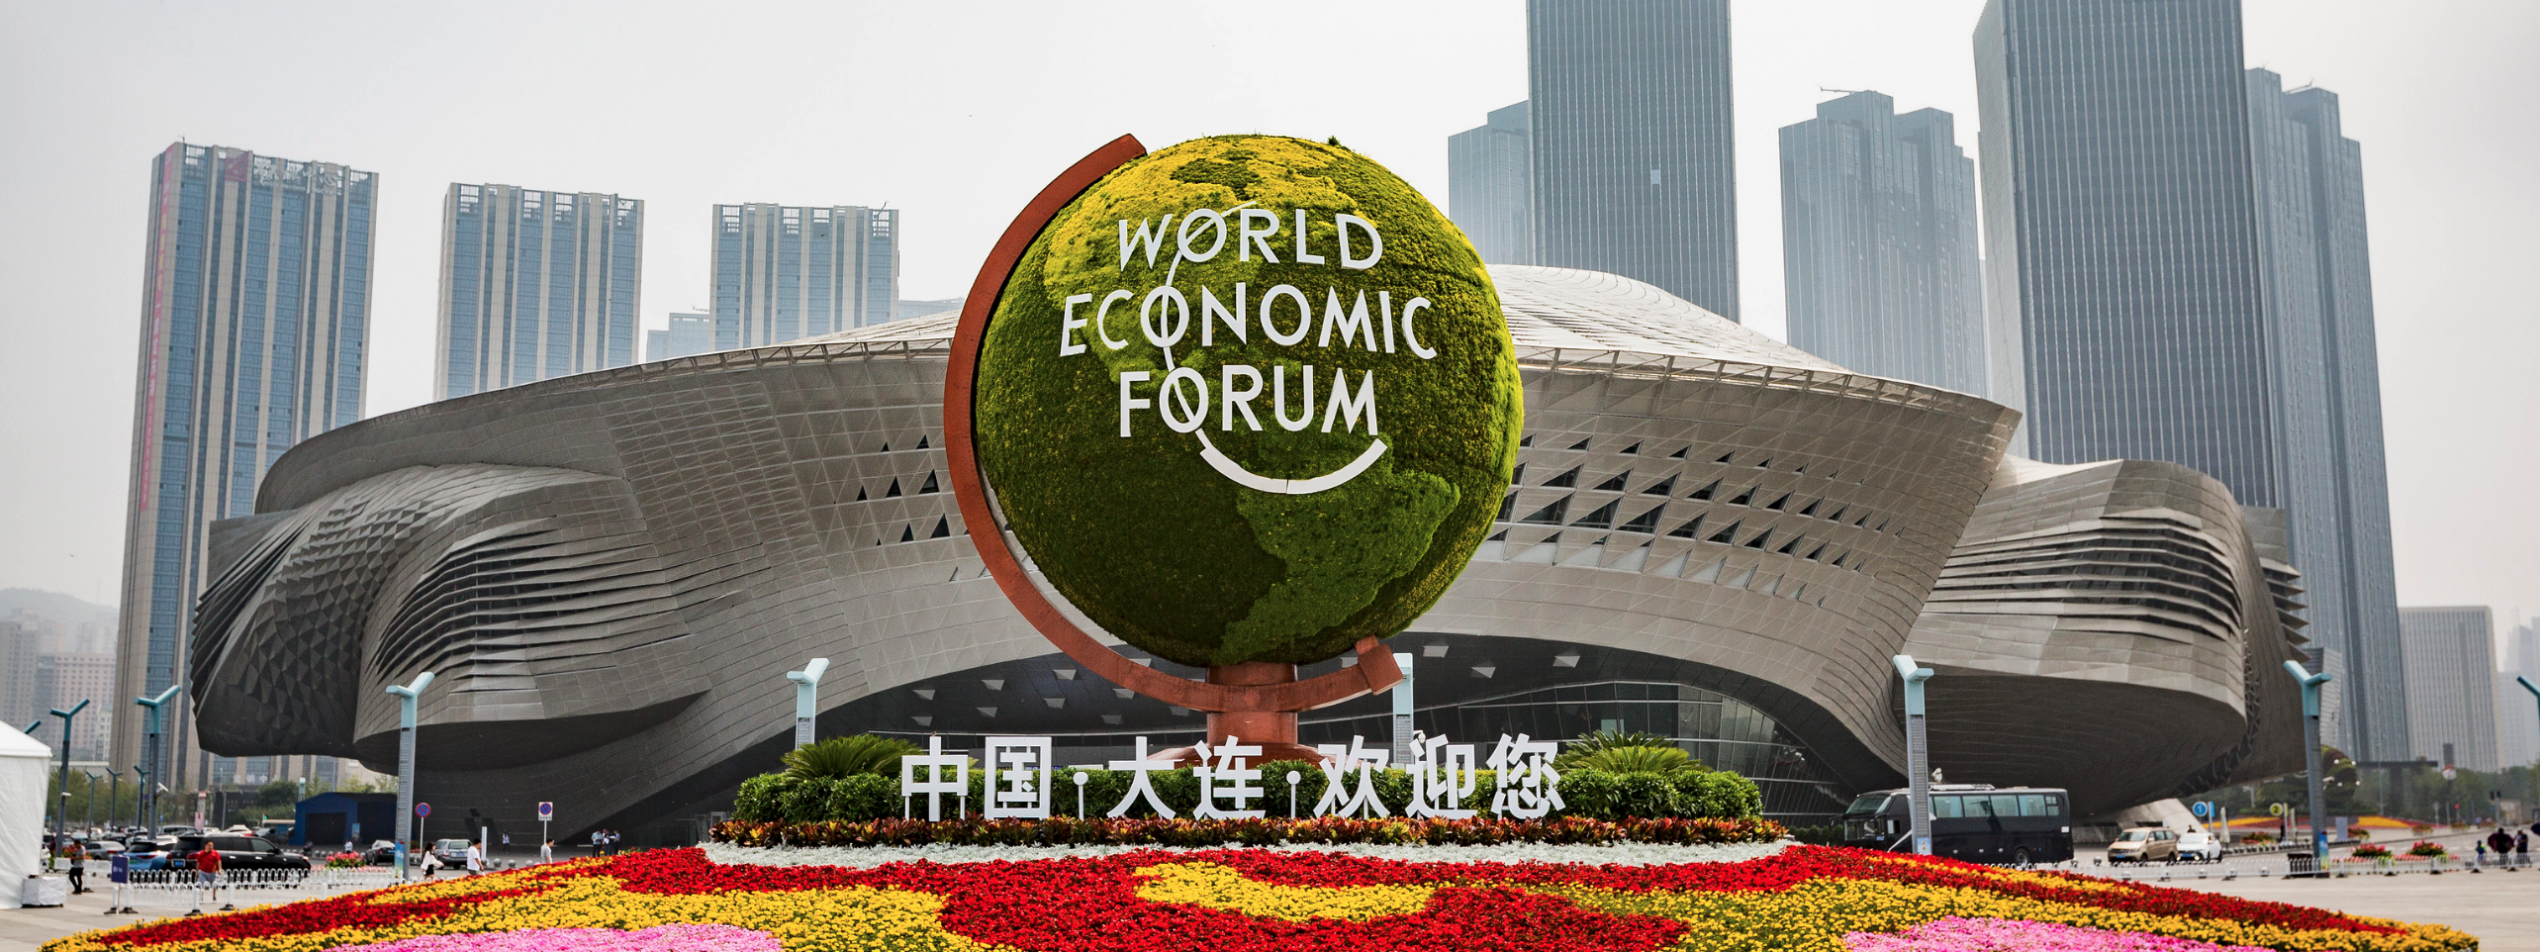 world, economic, forum